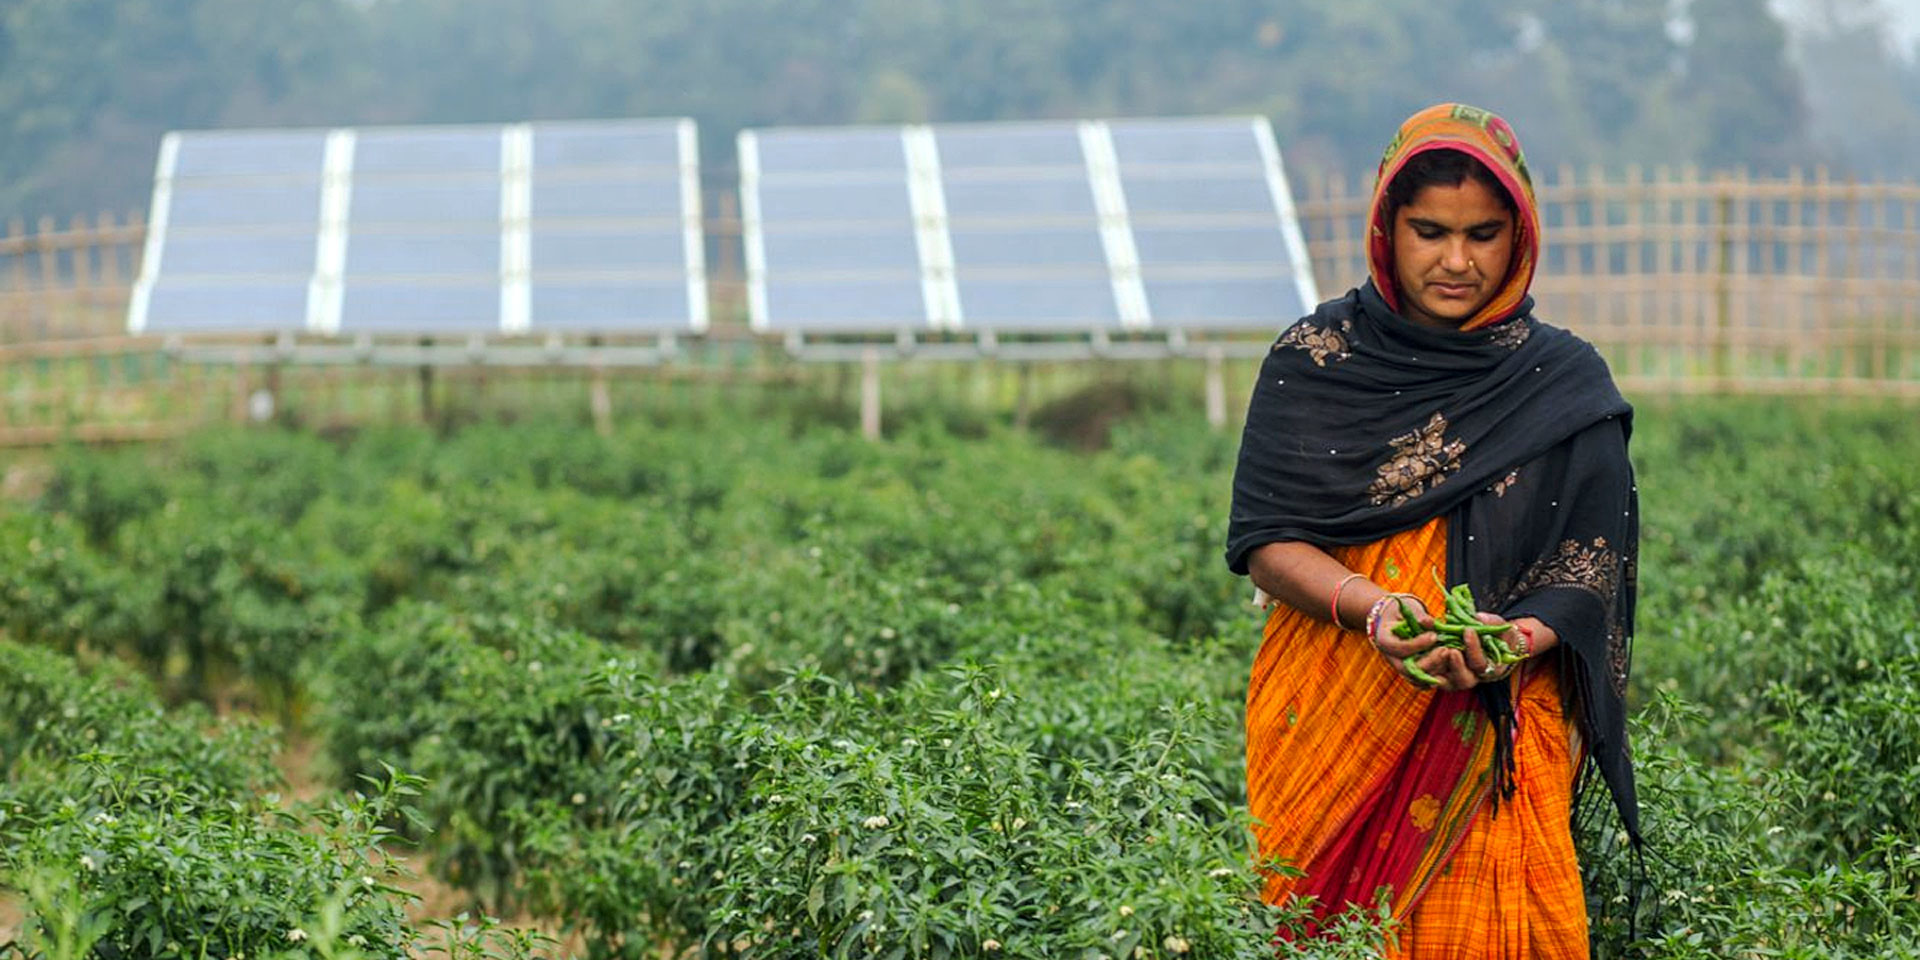 Una mujer con un sari naranja está cosechando verduras frescas de color verde en una zona por lo demás seca. Al fondo se ven paneles solares.